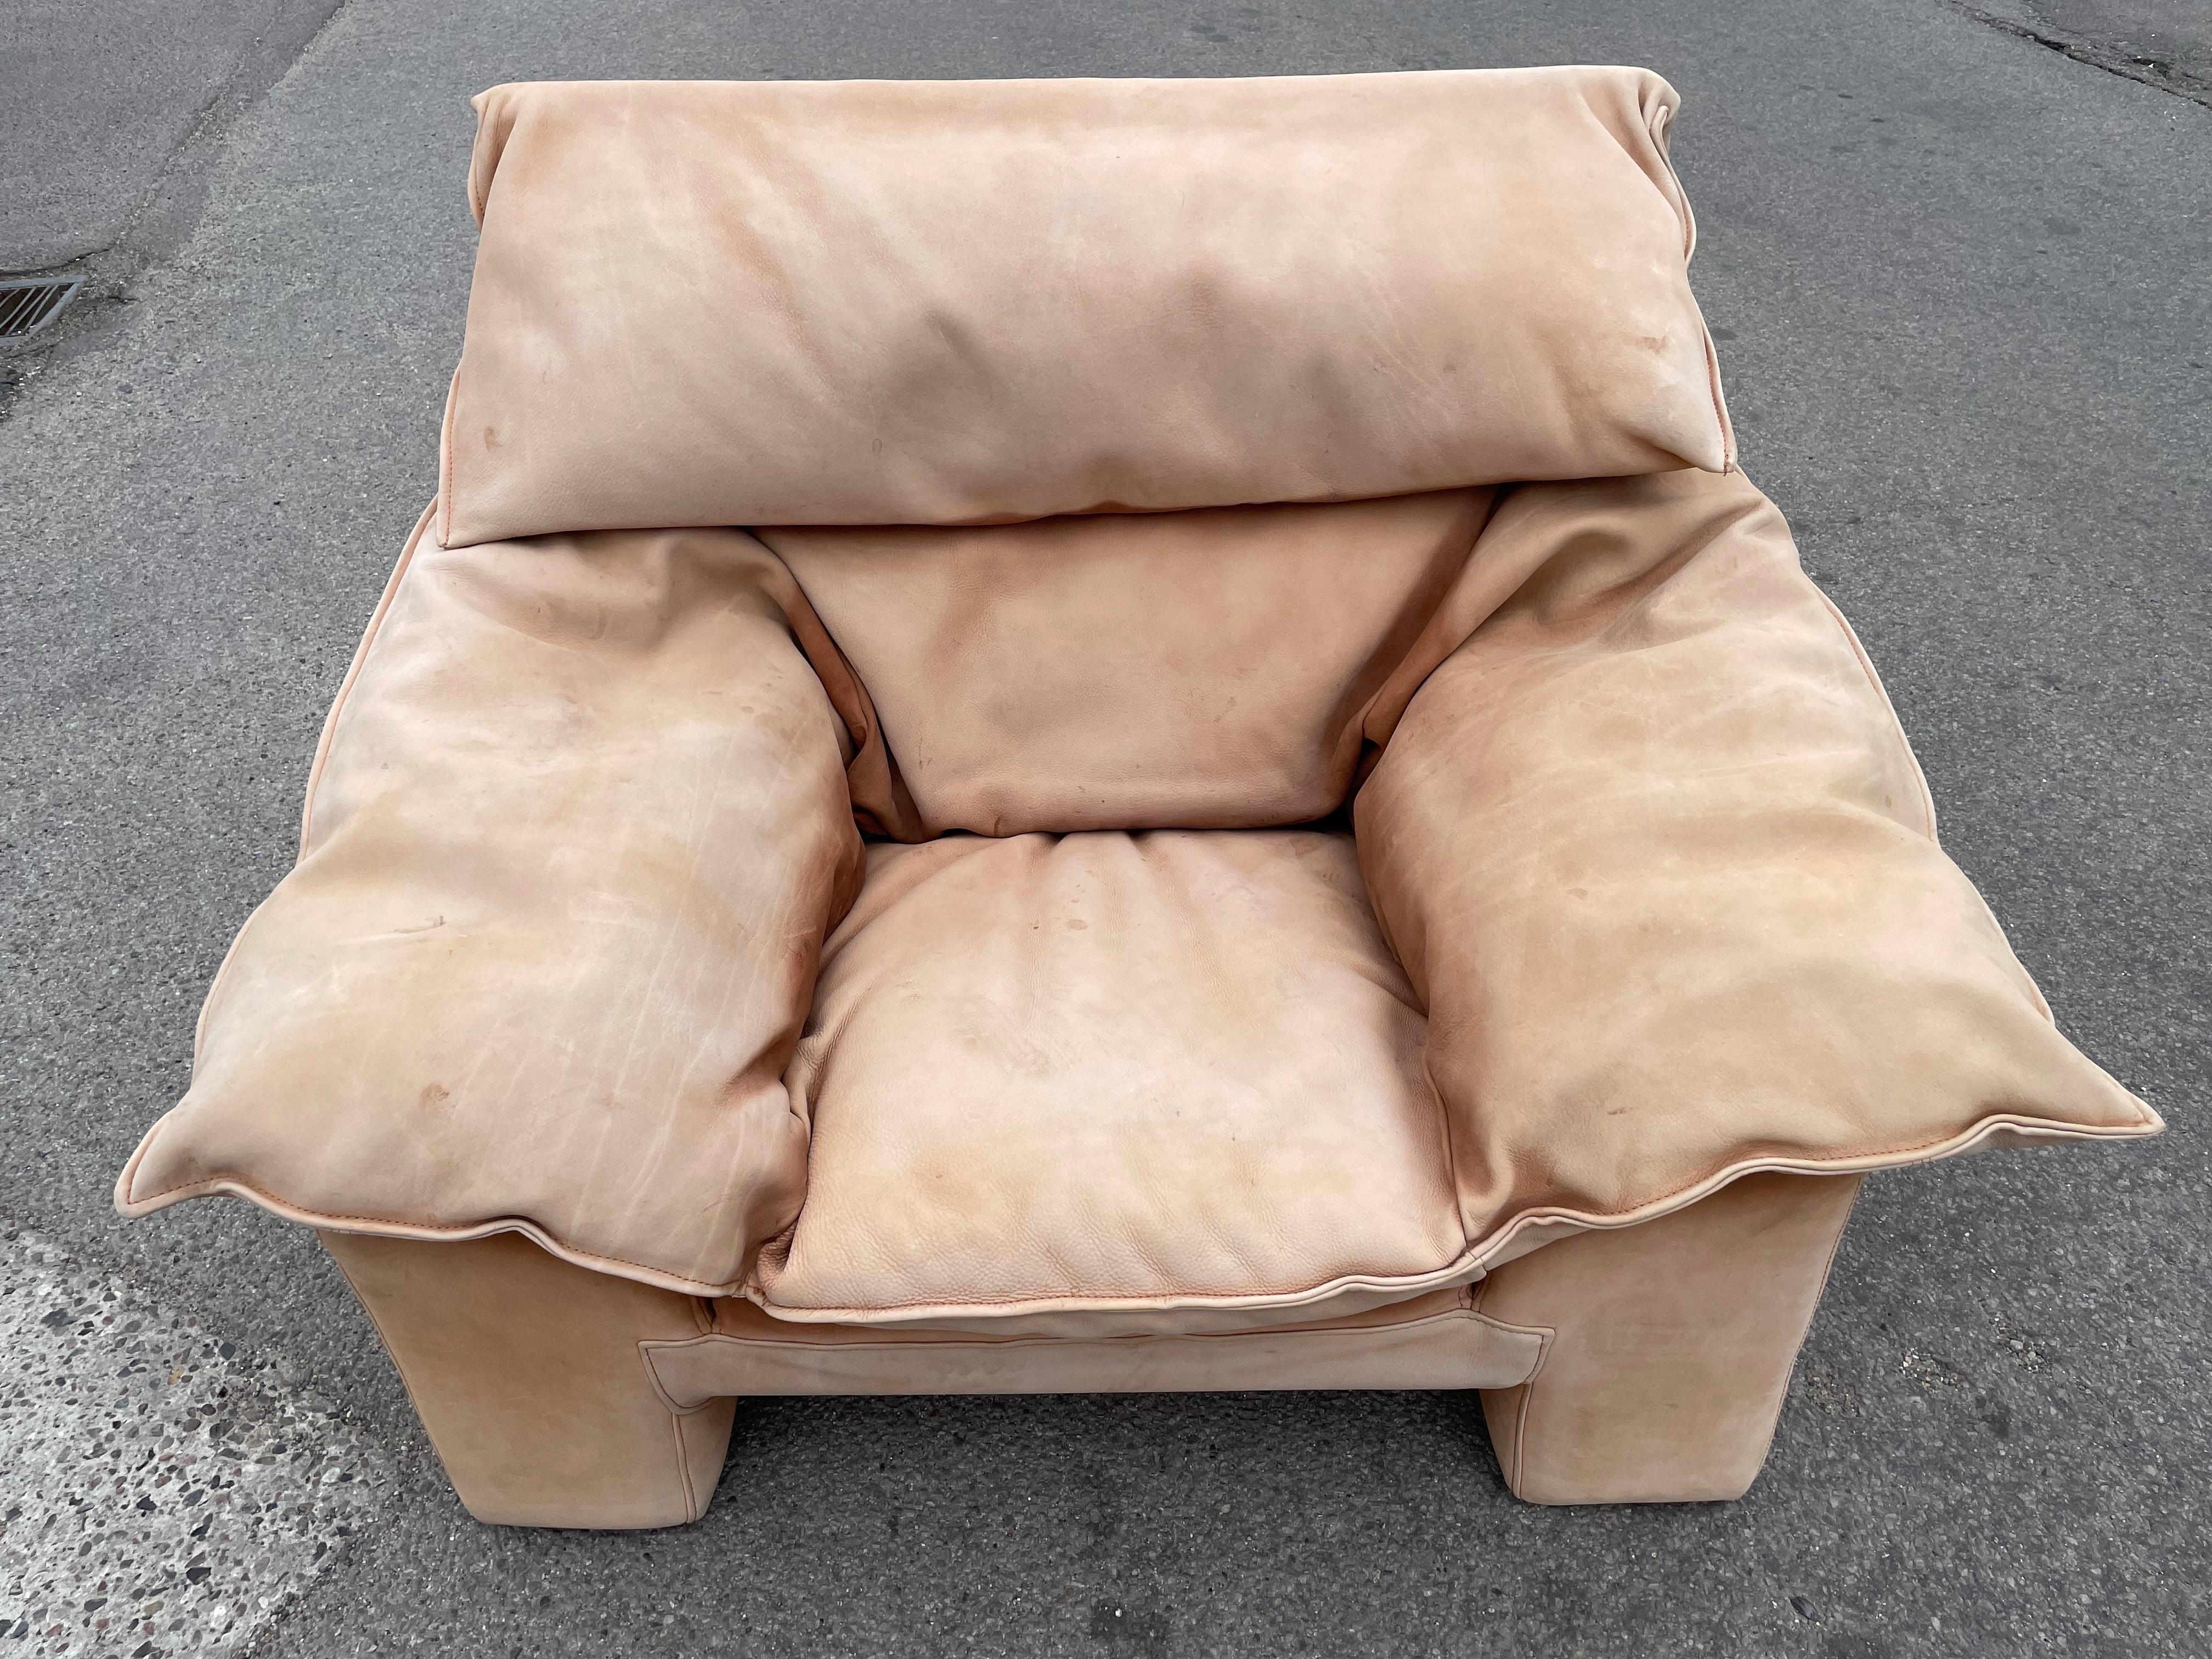 Einzigartiger Monza-Sessel von Jens Juul Eilersen. Ein großartiger Loungesessel, auf dem man dank seiner Größe in jeder Position sitzen und entspannen kann

Der großartige Monza Sessel, ein Meisterwerk des dänischen Designs, wurde von dem berühmten